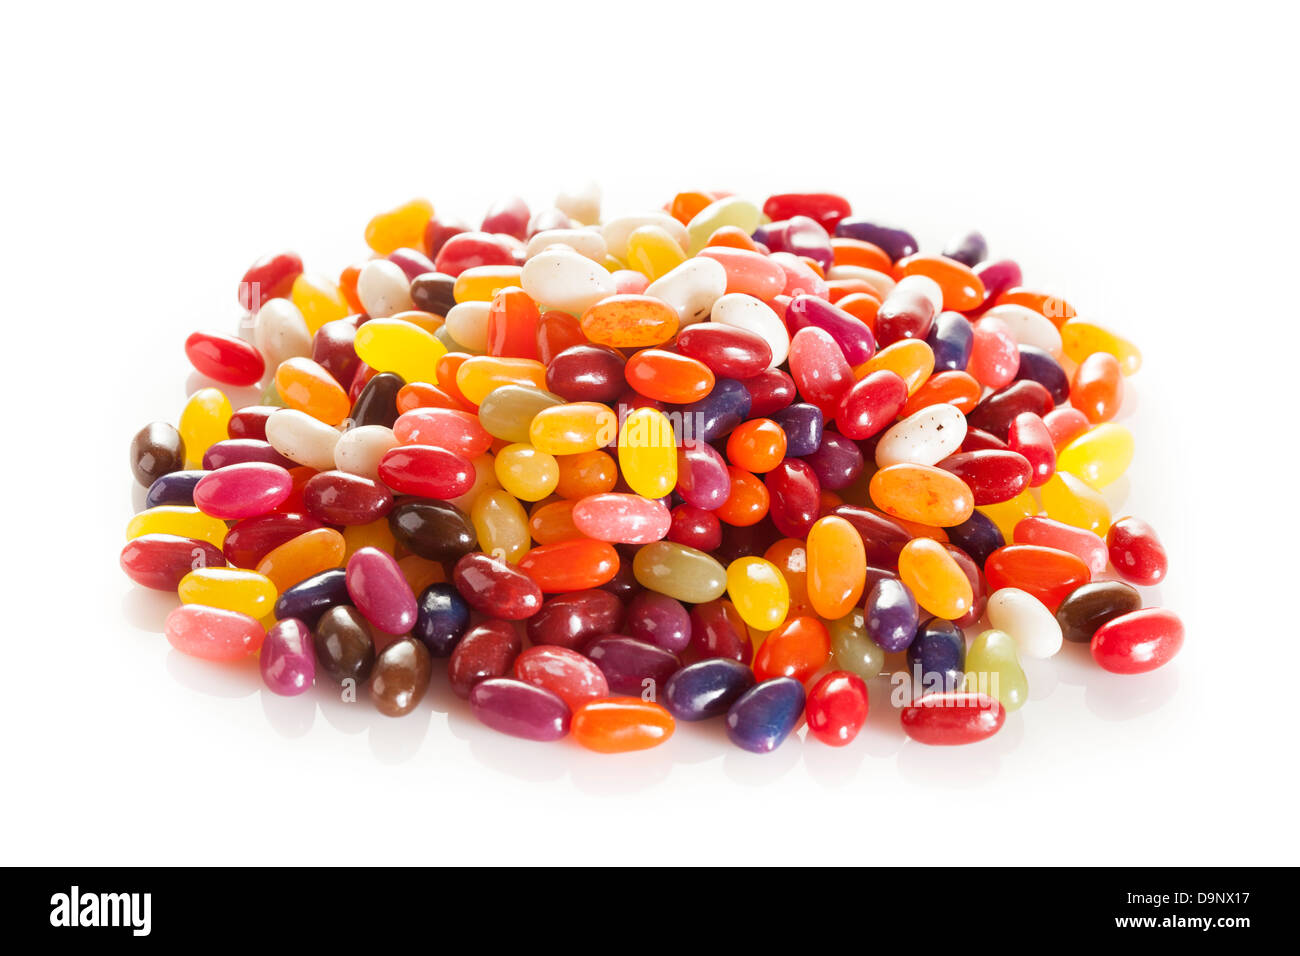 Bunt gemischte fruchtige Jelly Beans auf einem Hintergrund Stockfoto